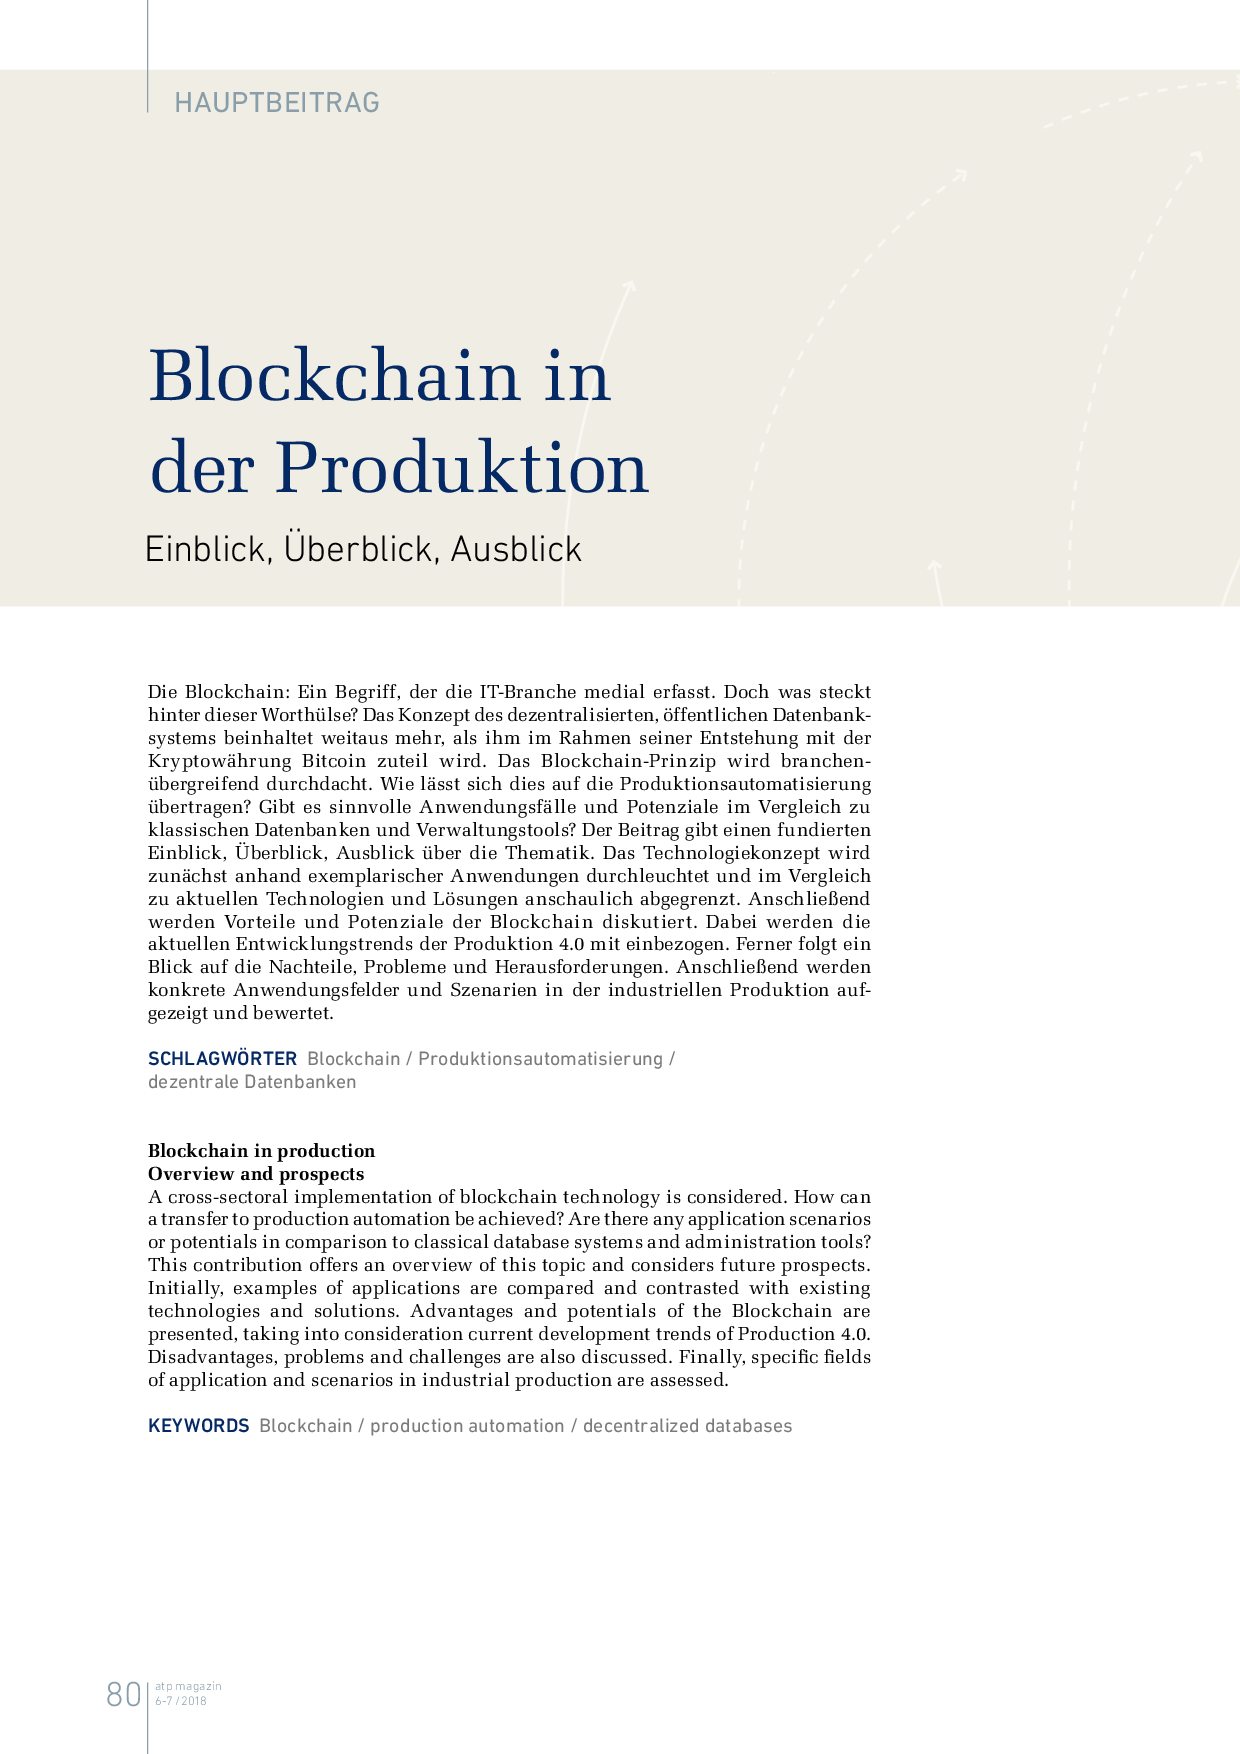 Blockchain in der Produktion